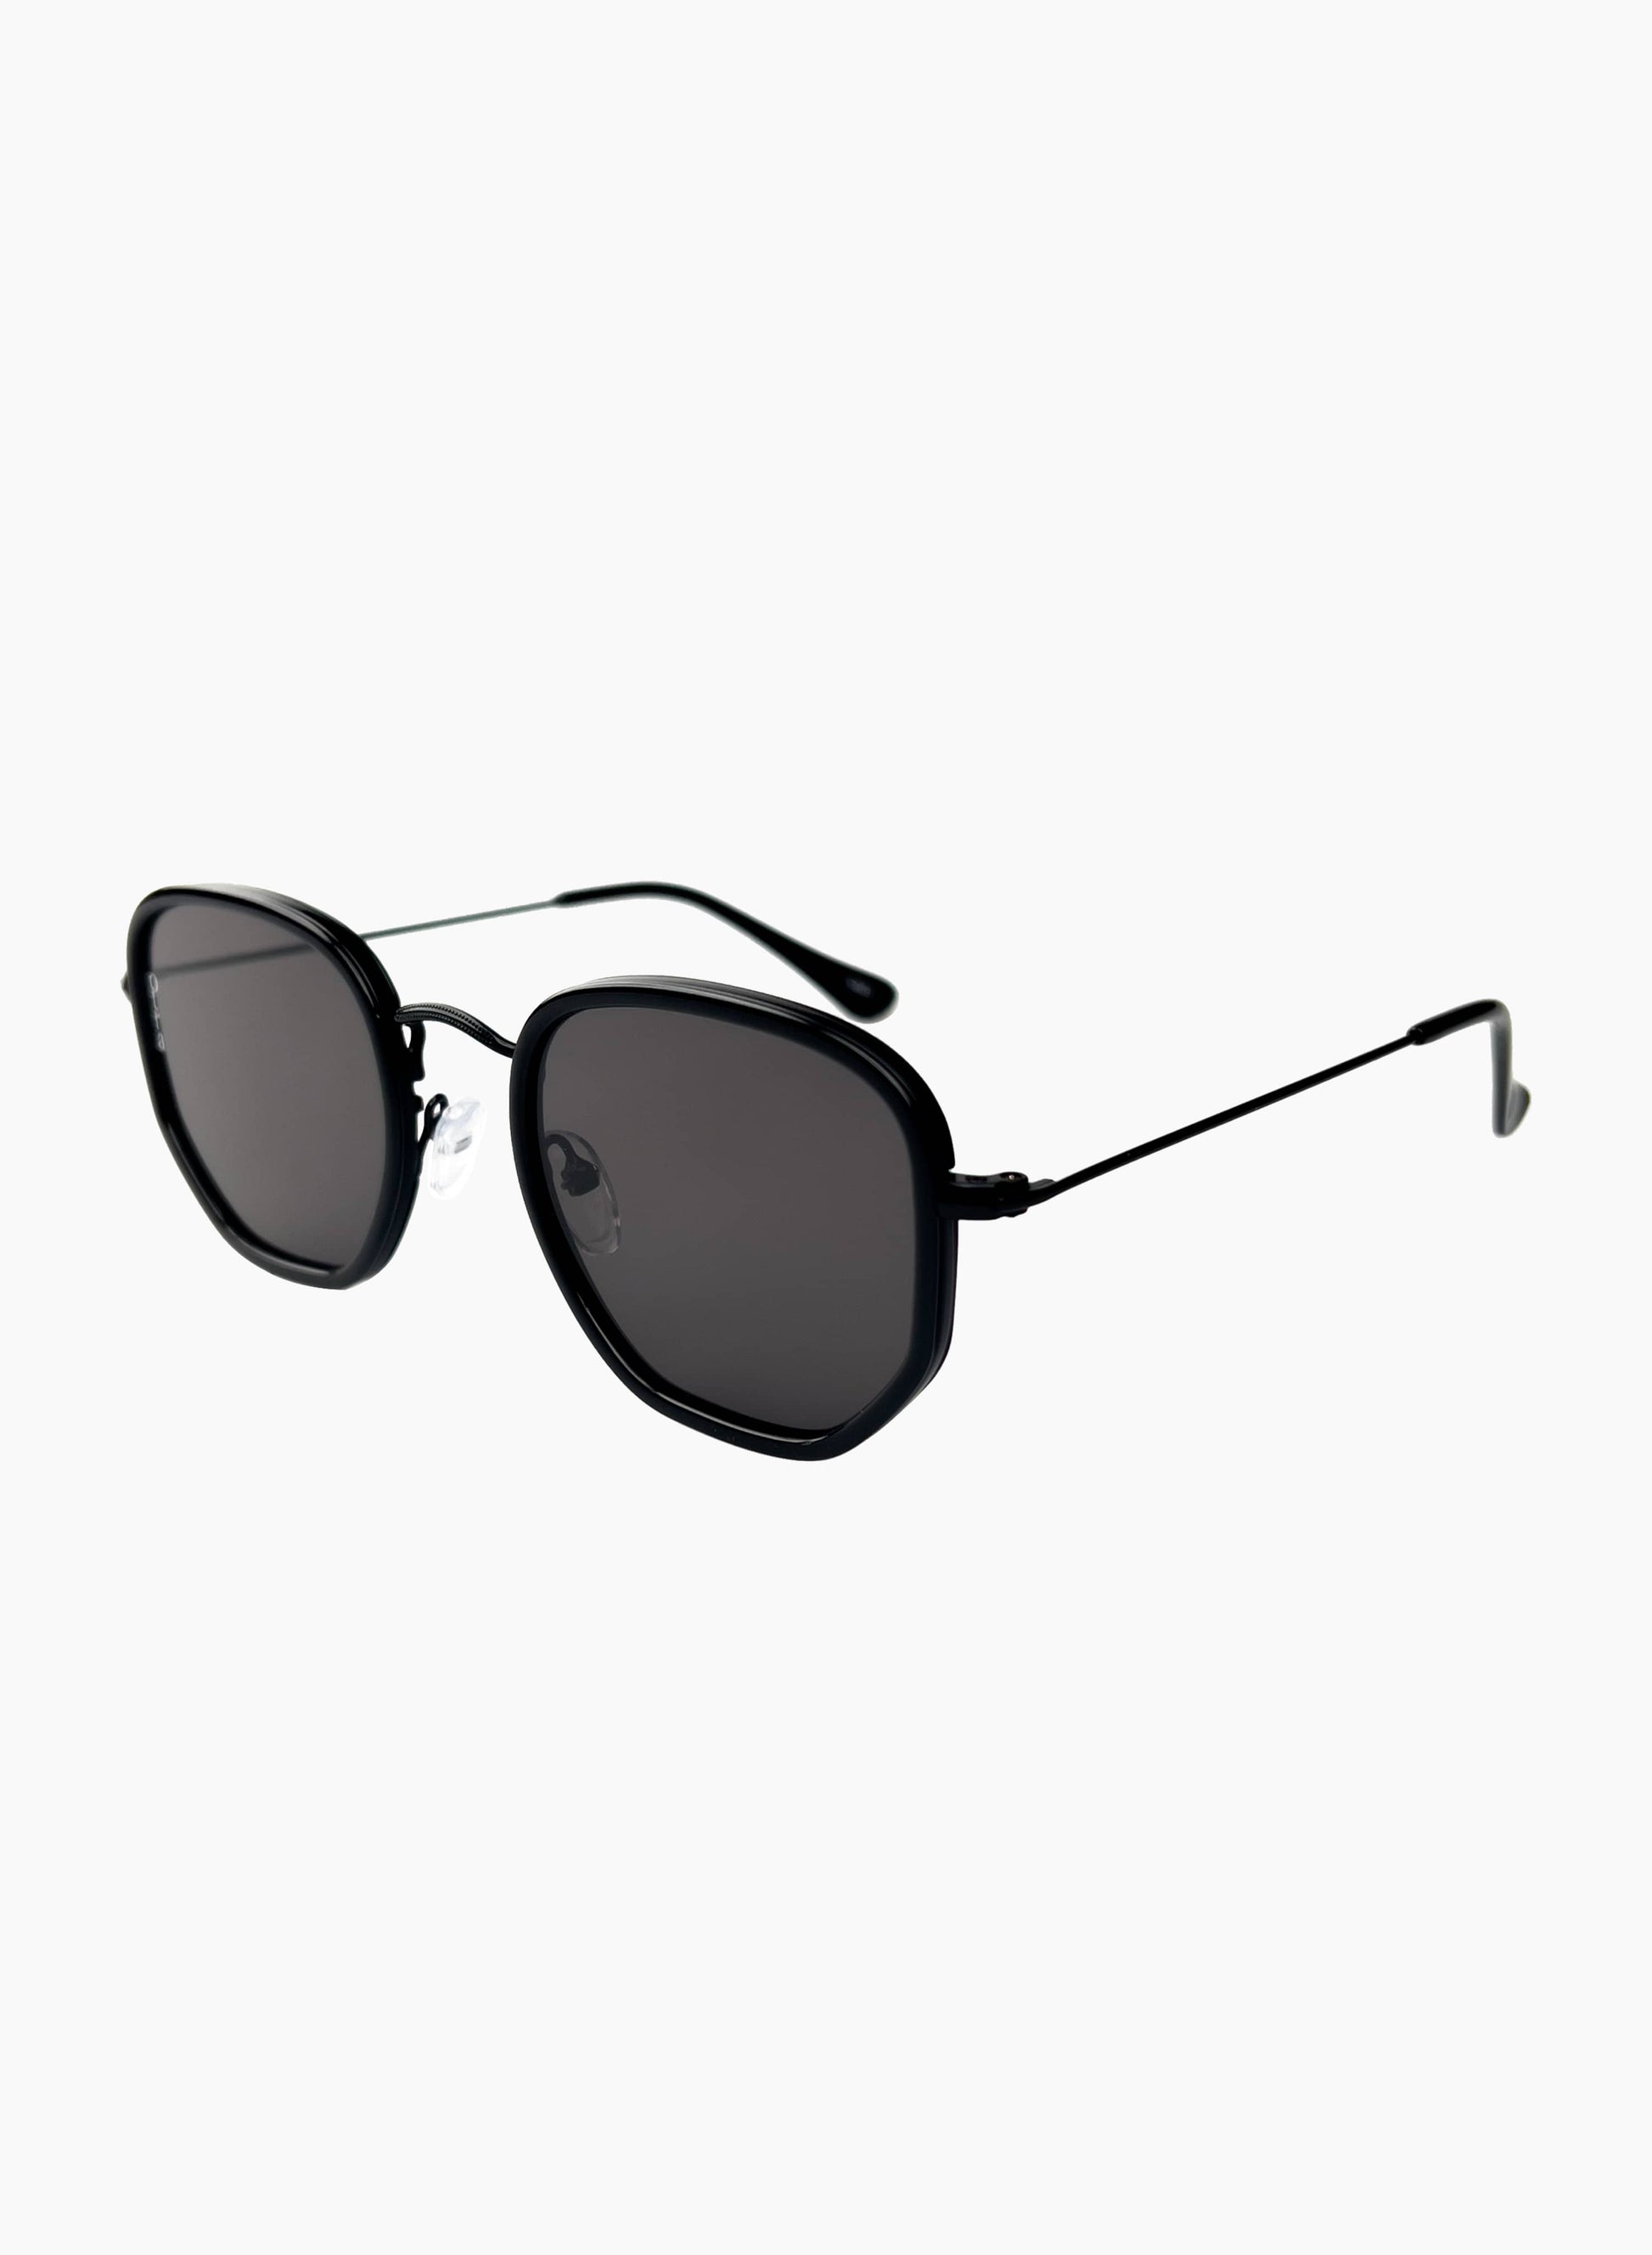 Rectangular Tate glasses in black lenses with black frame